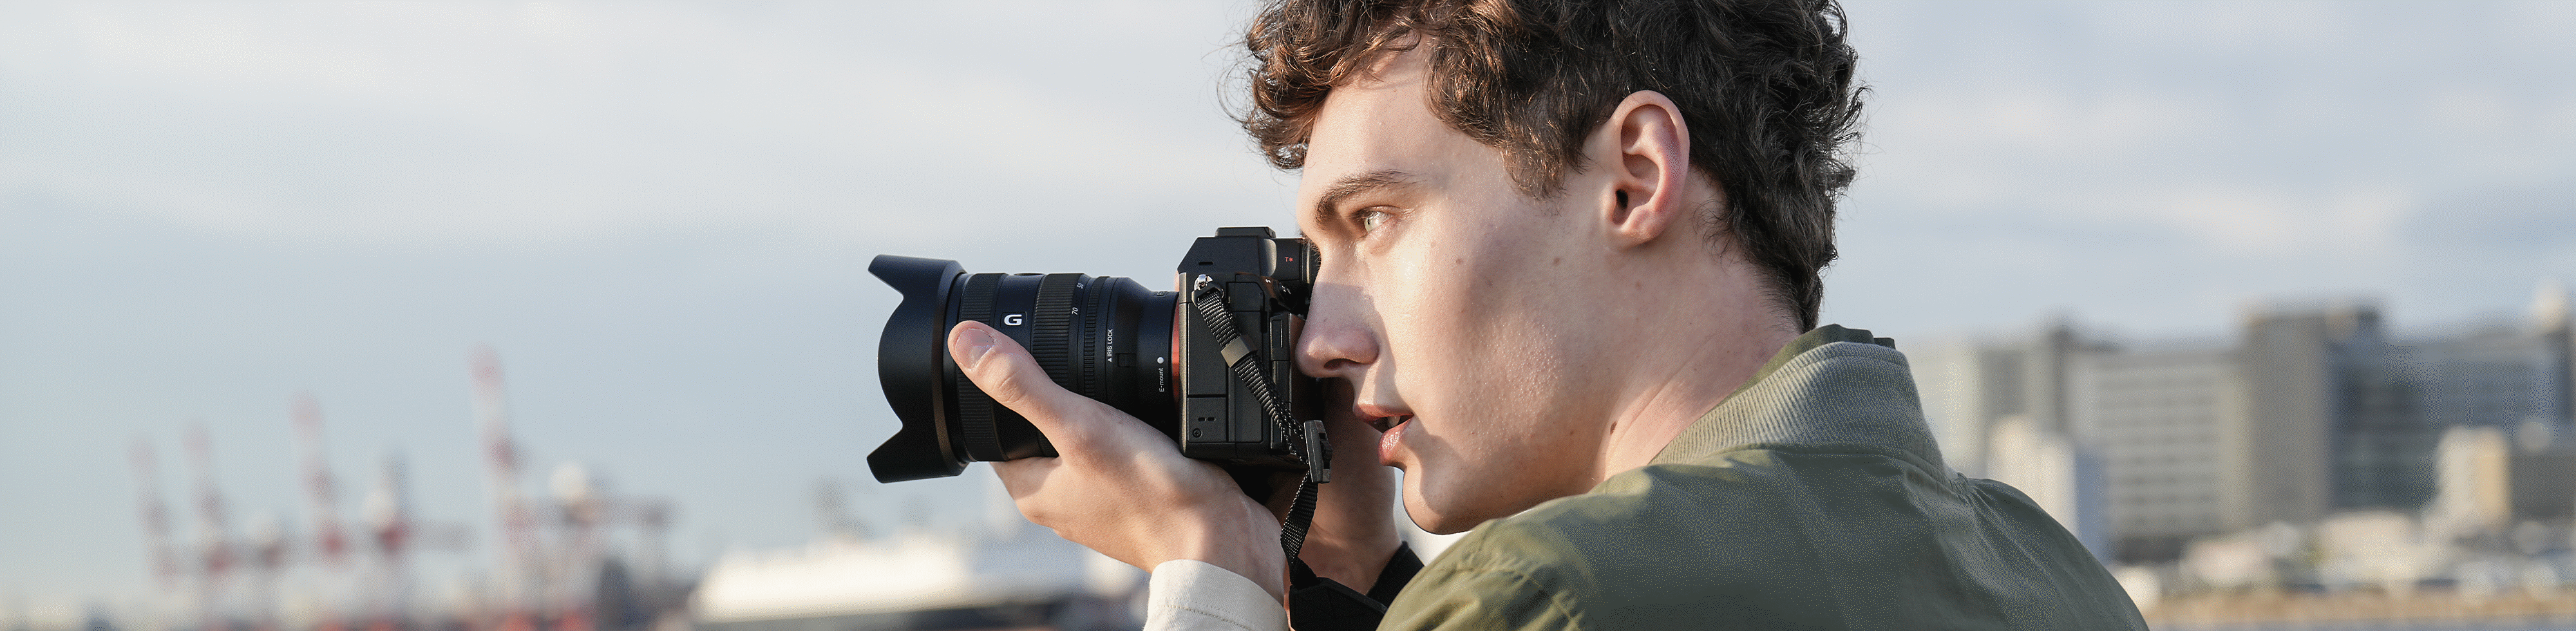 Човек снима на крайбрежие с фотоапарат в ръка и използва визьор